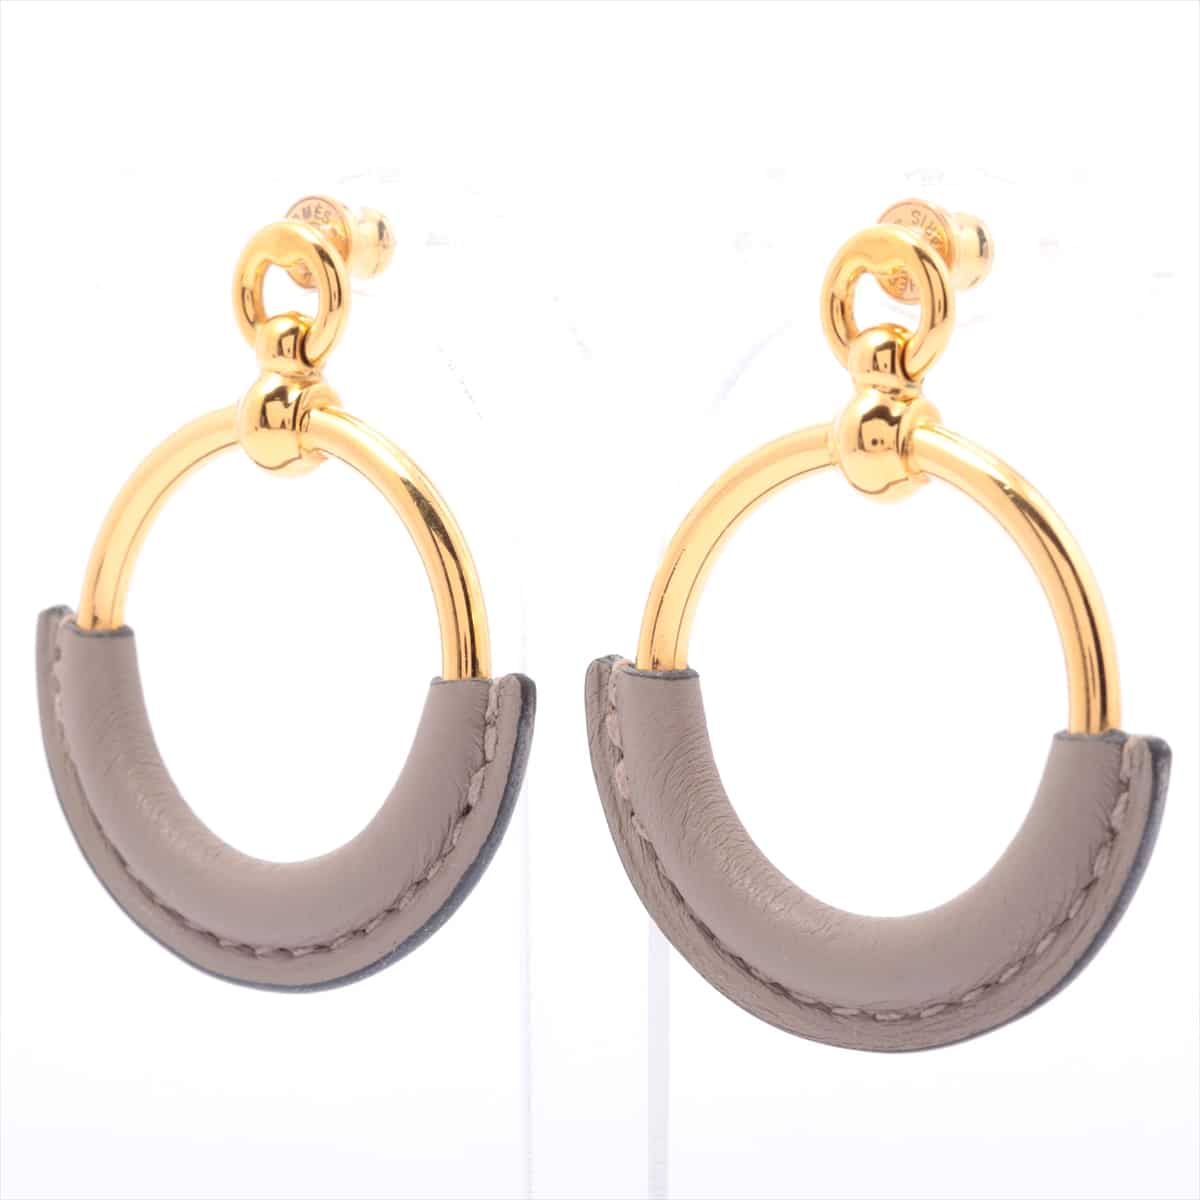 Hermès Loop Piercing jewelry (for both ears) GP & Leather